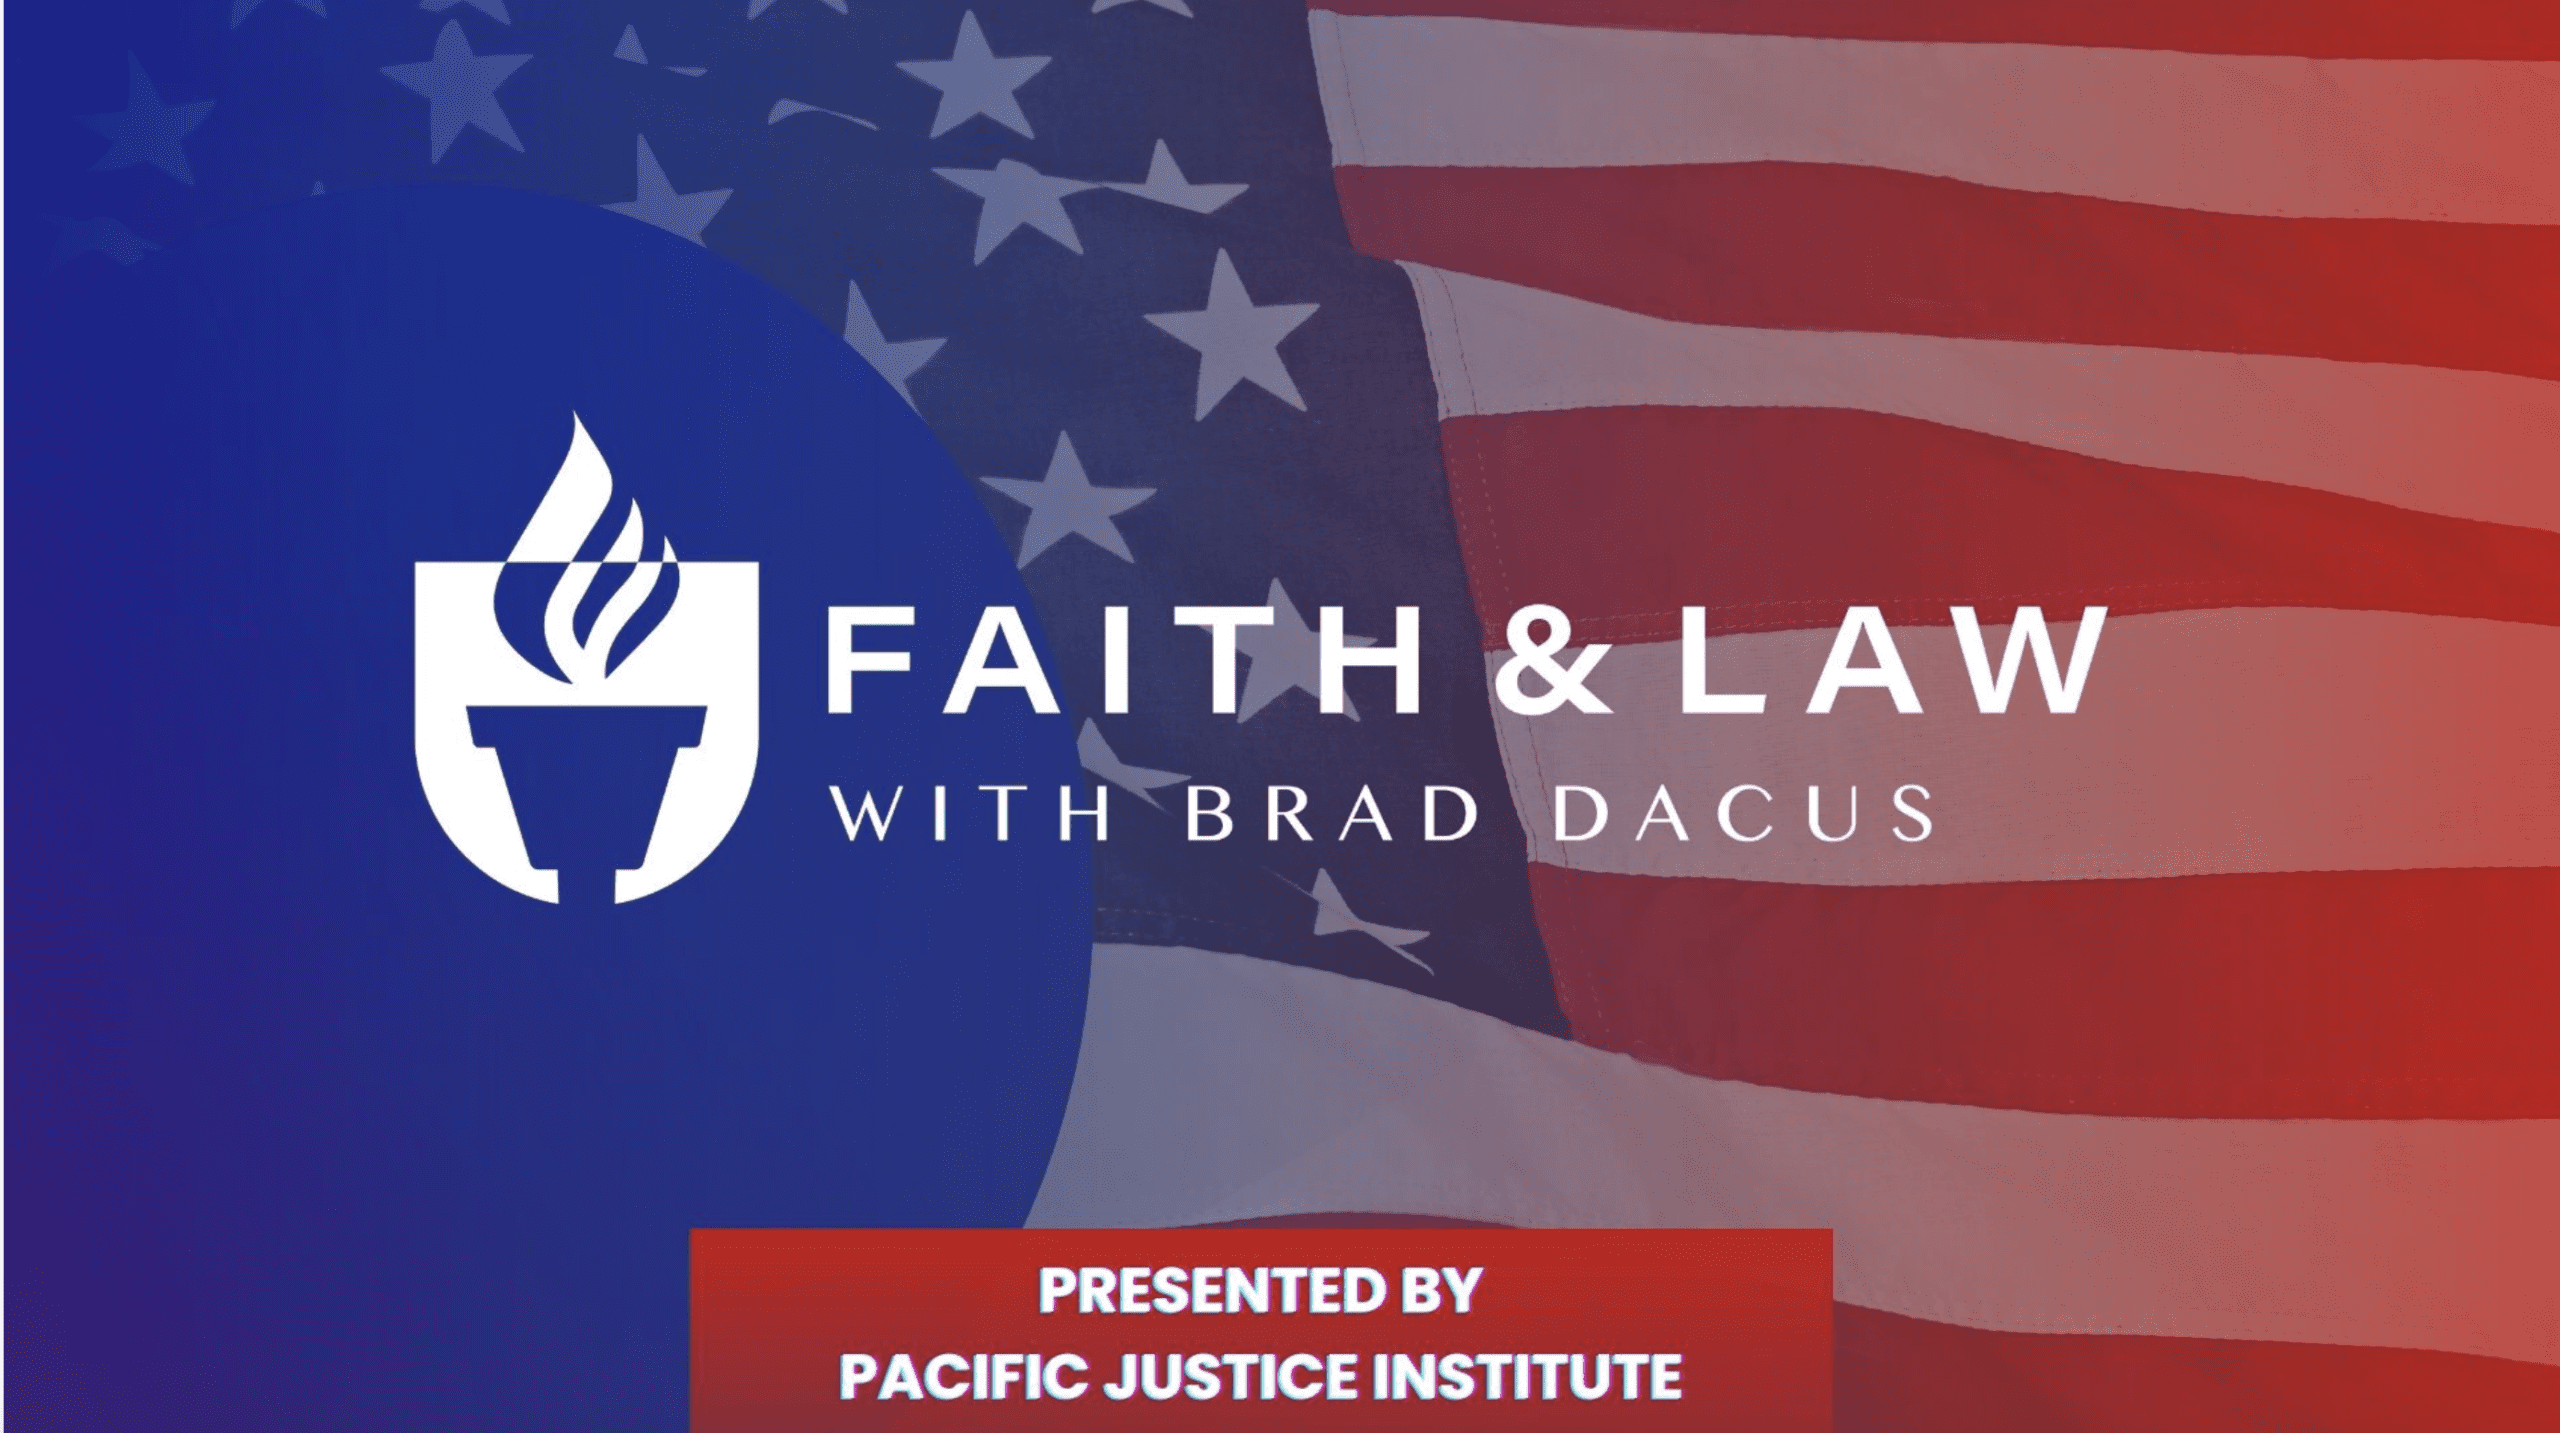 Faith & Law with Brad Dacus